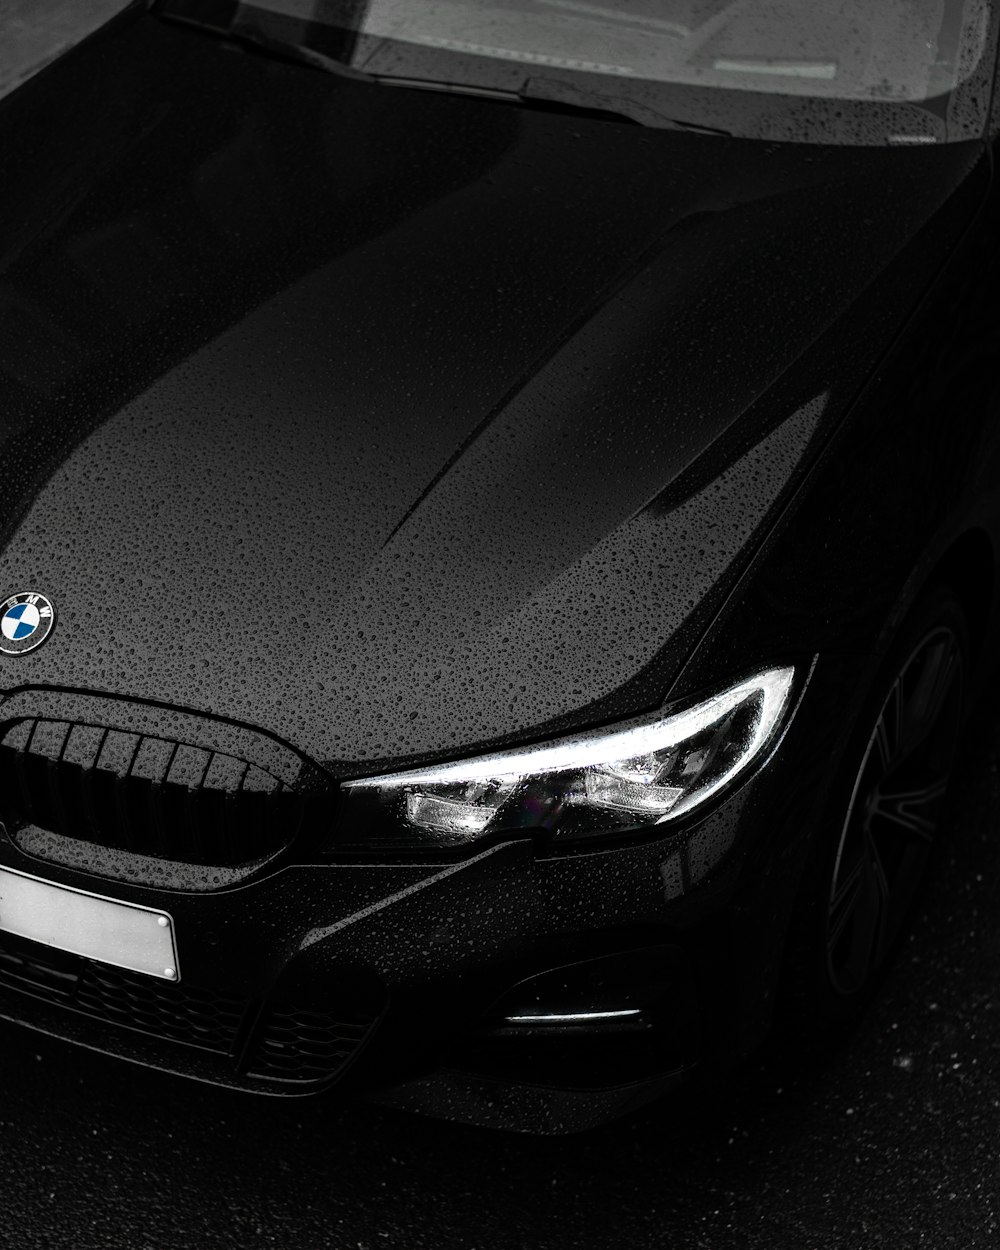 Coche BMW negro en fotografía de primer plano